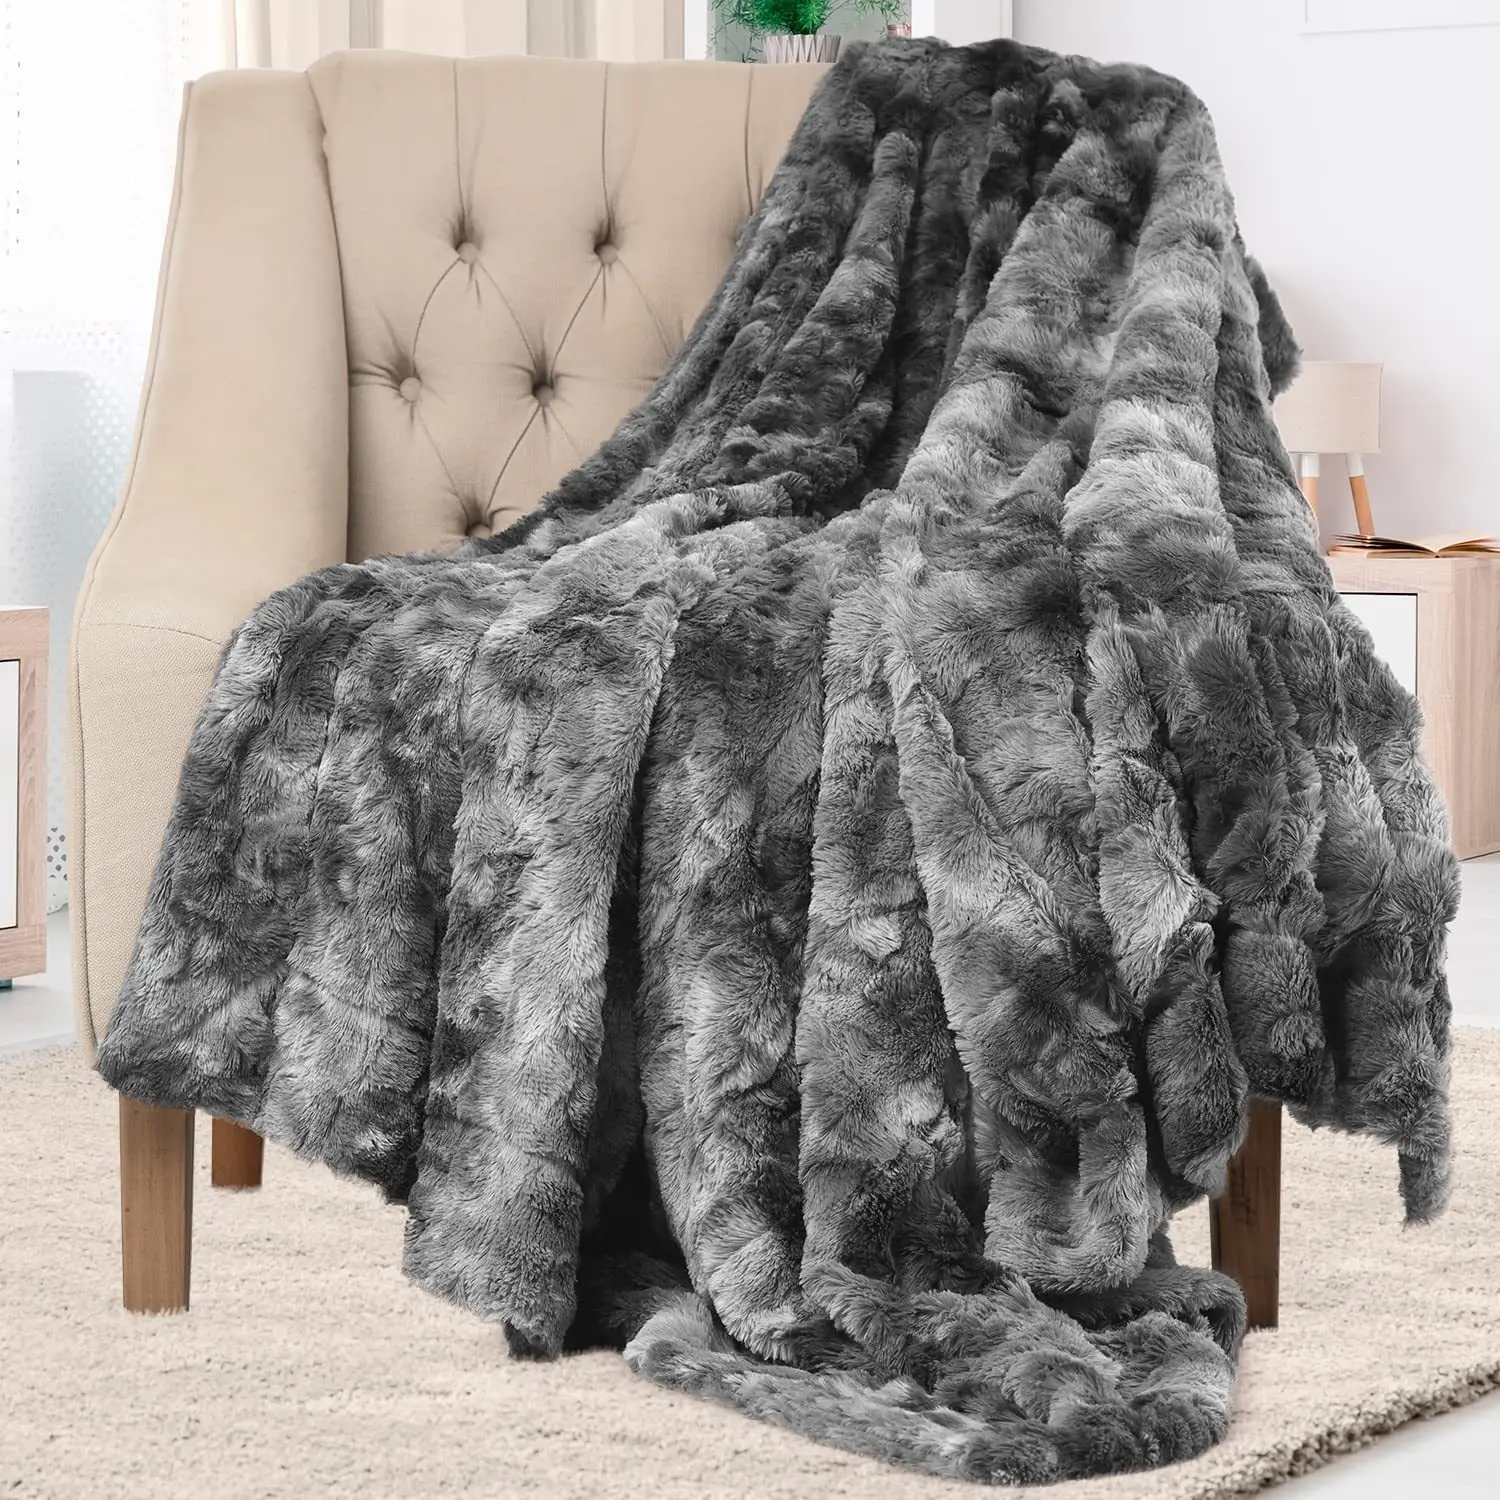 

Hot Selling Blanket PVC Velvet Tie Dyed Double-sided Blanket Long Wool Blanket Lamb Blanket Sofa Cover Blanket Picnic Blanket